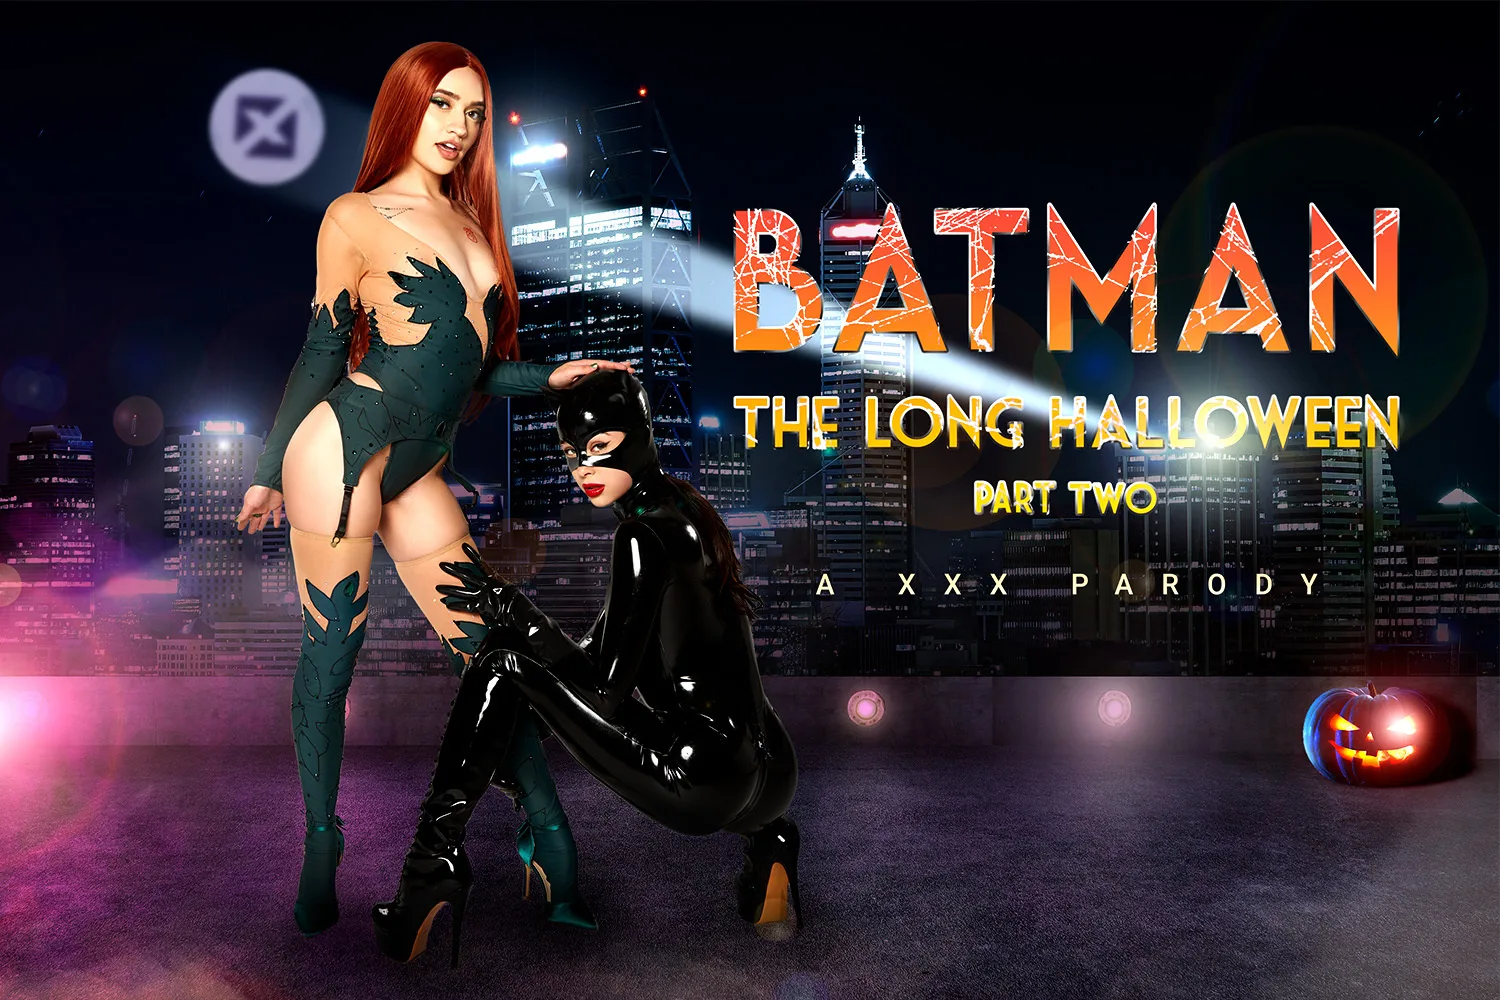 [2022-10-27] Batman: The Long Halloween Part Two A XXX Parody - VRCosplayX